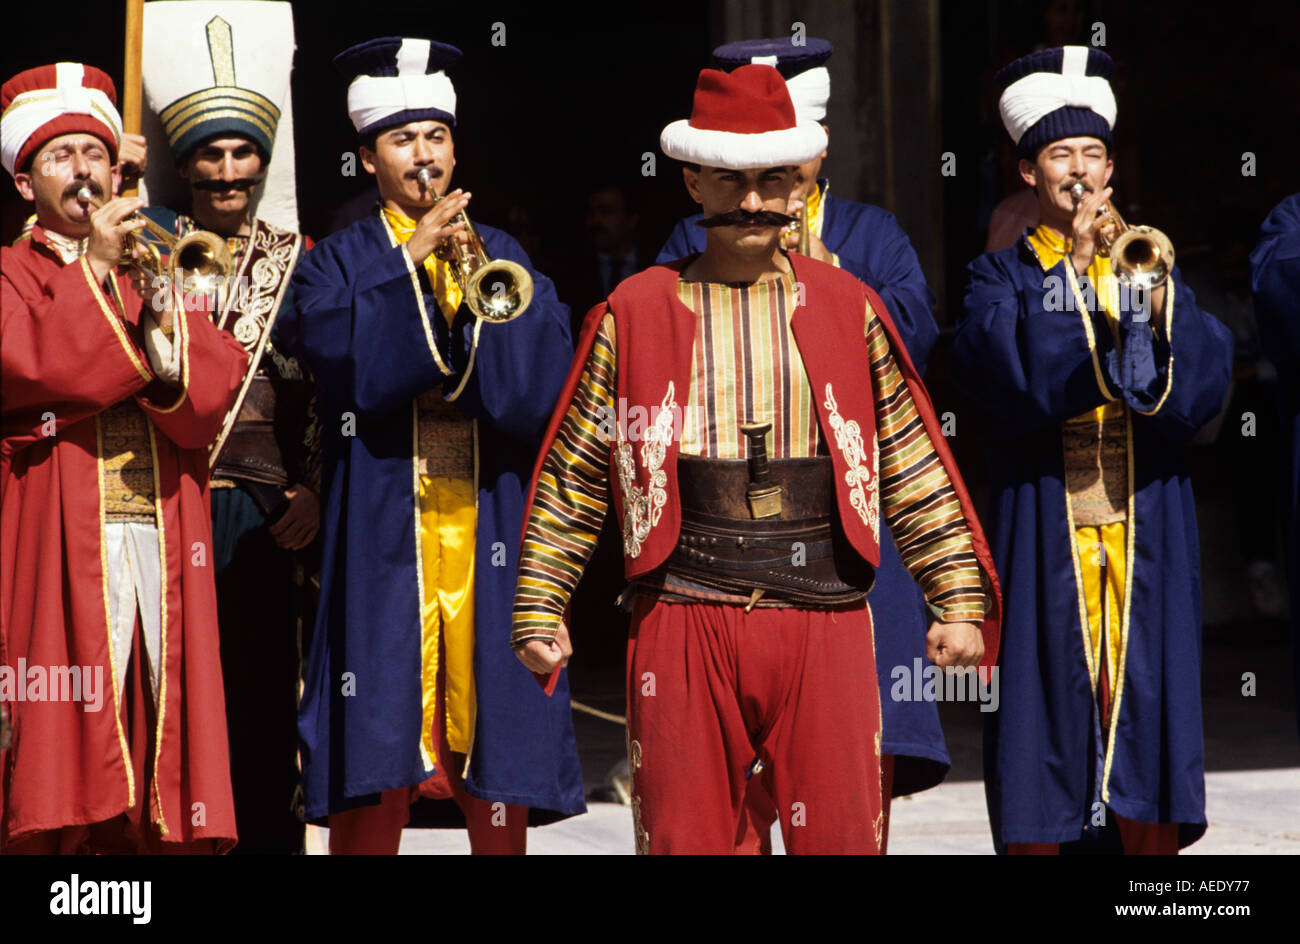 Männer gekleidet In traditioneller Kleidung Istanbul Türkei Stockfotografie  - Alamy